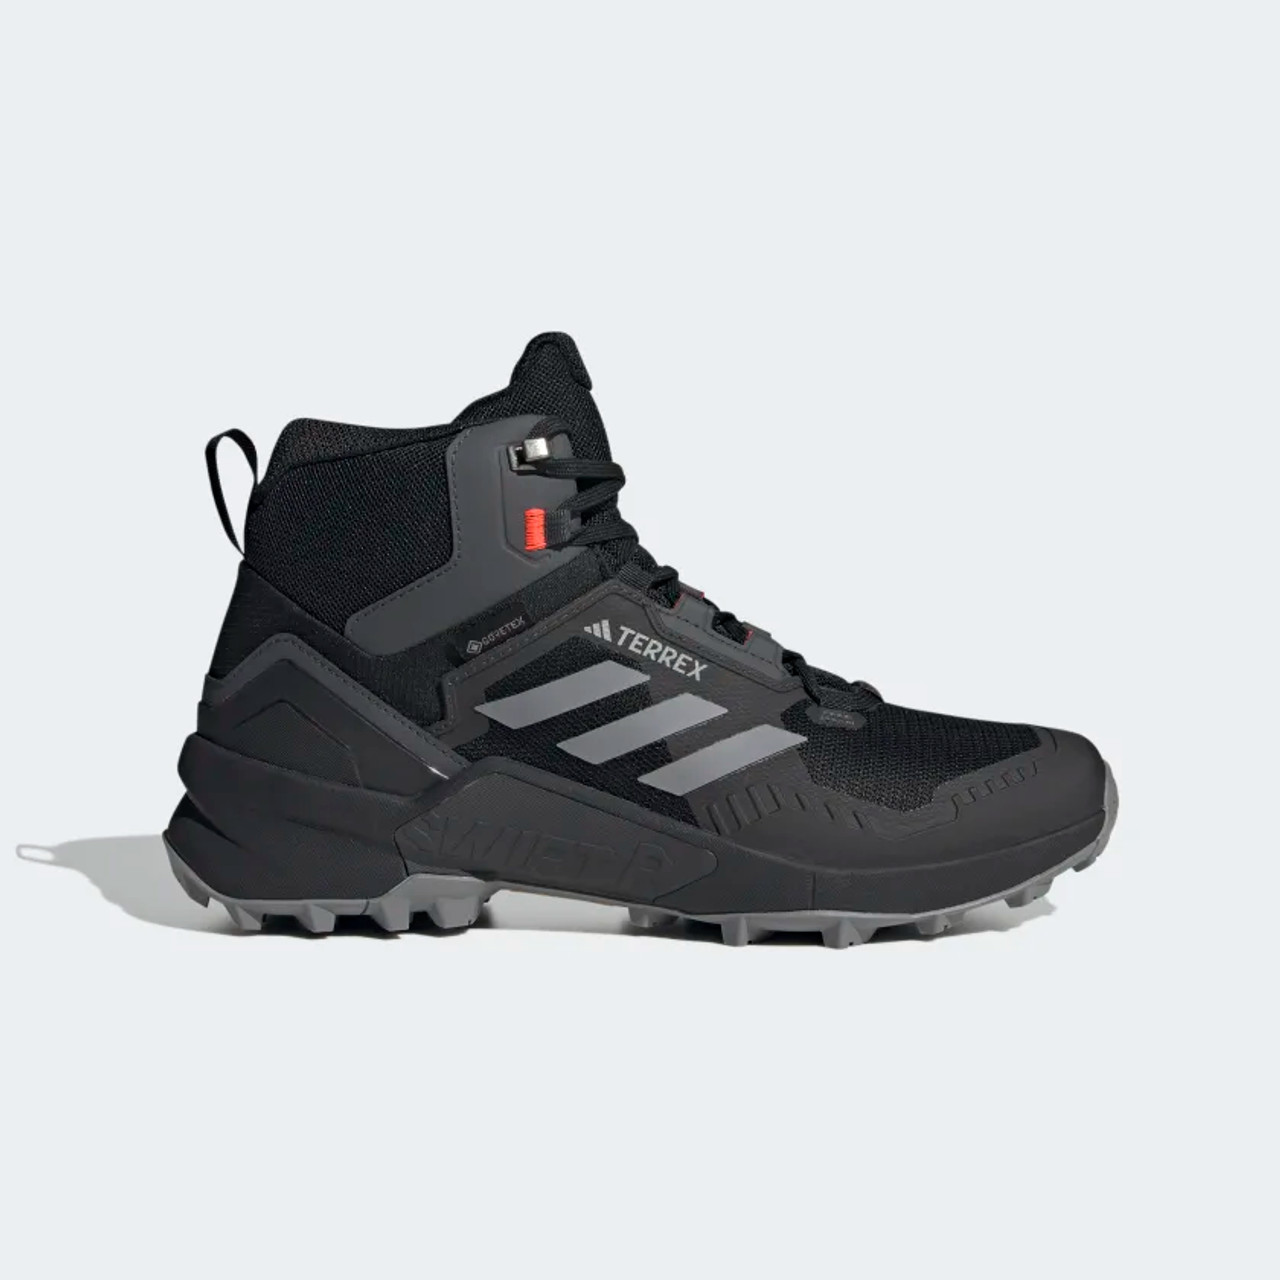 adidas Originals OT Tech 2010 Fall/Winter Hike Boot | Hypebeast